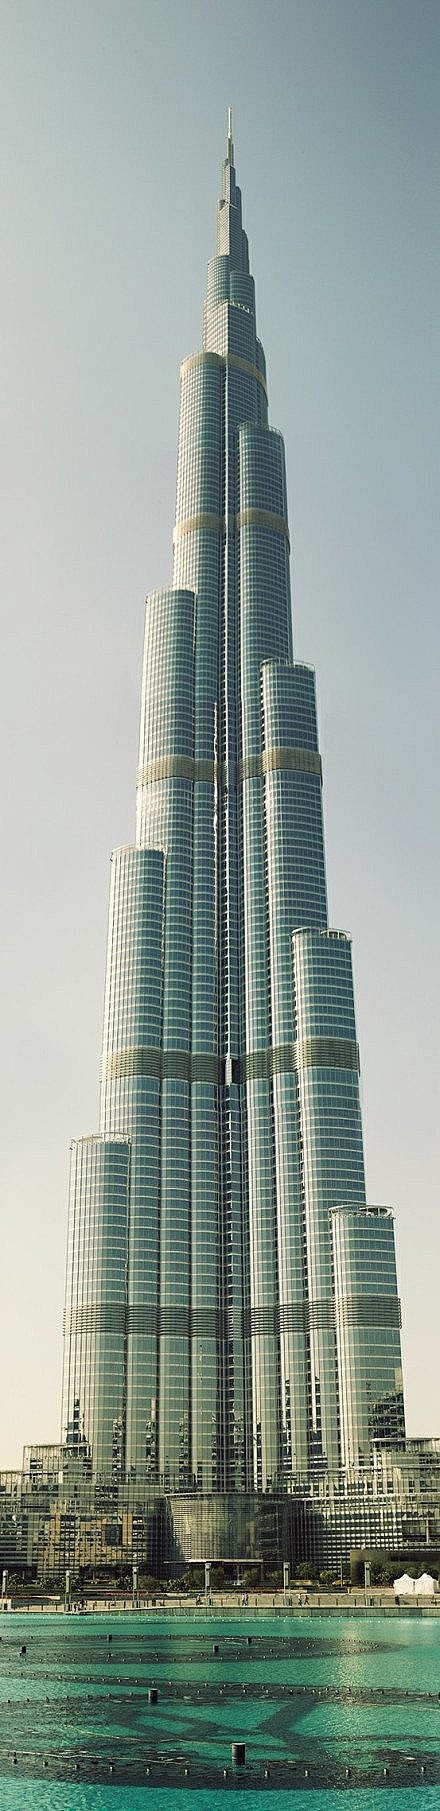 世界最高建筑阿联酋迪拜塔160层高828米人类历史上首个高度超过800米